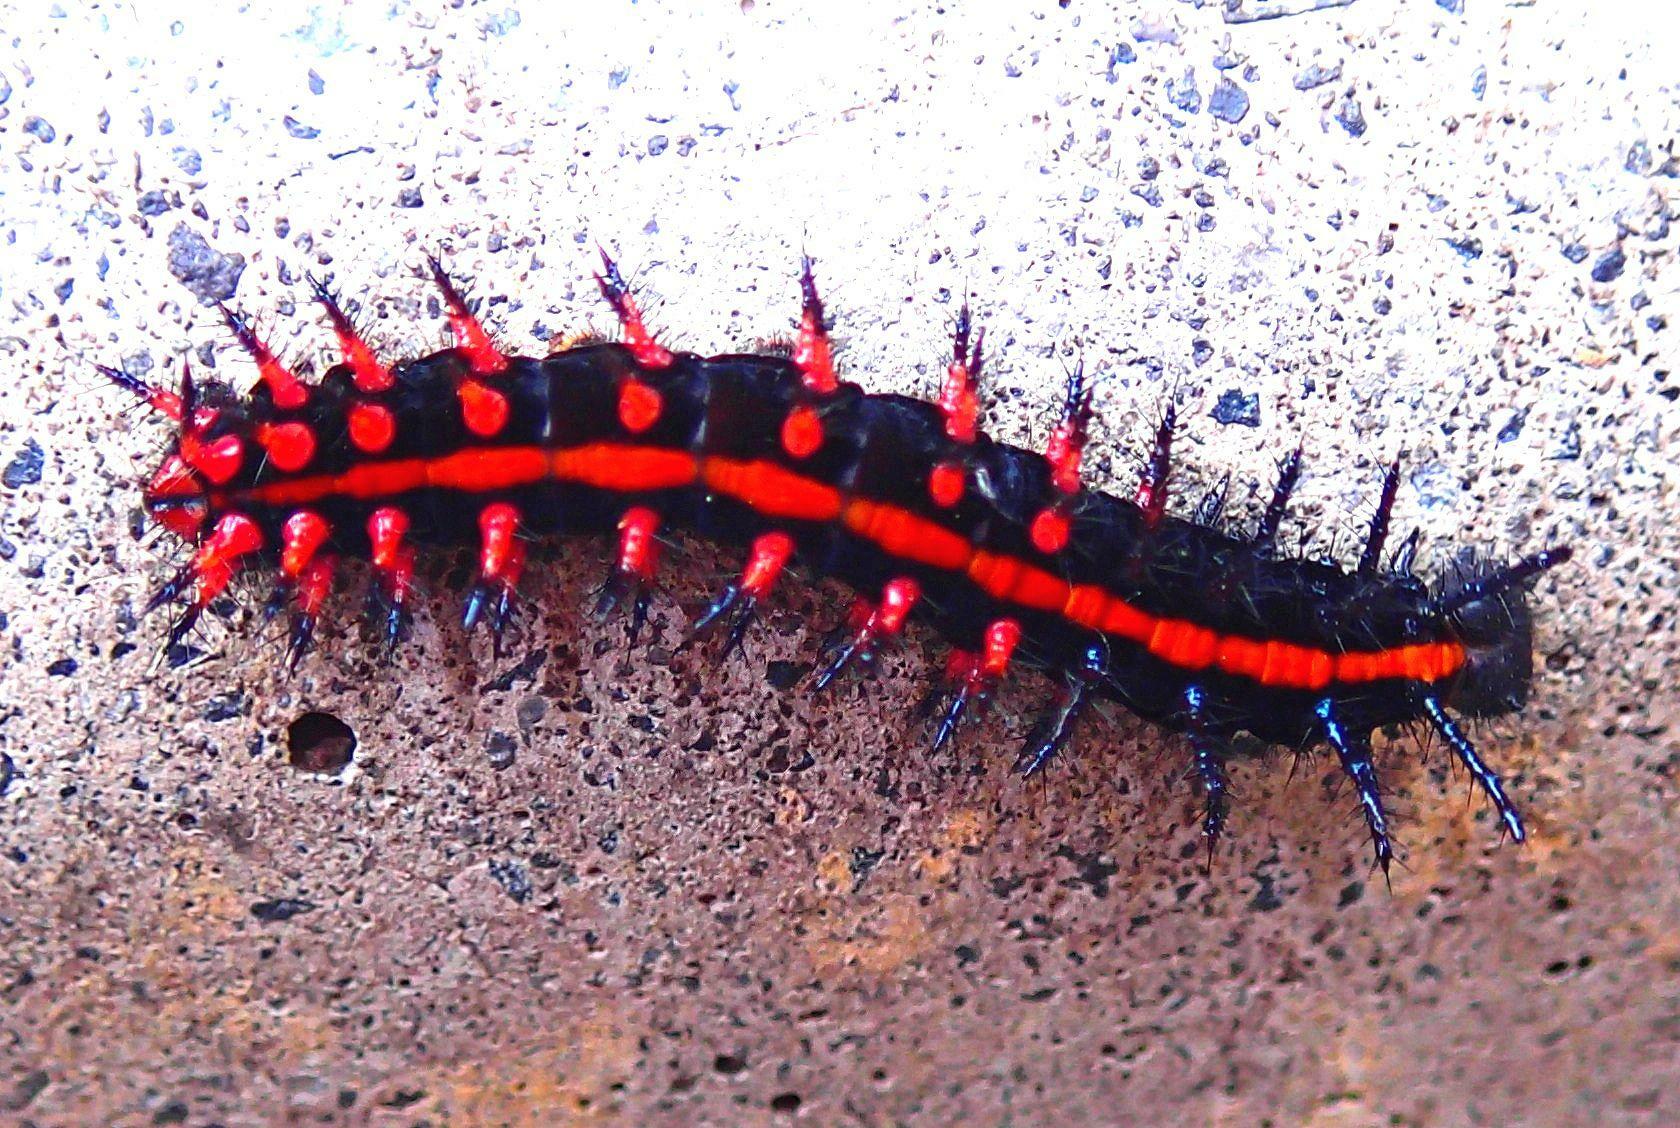 ムカデのような毒々しさのツマグロヒョウモン幼虫。蛹化前に道路を歩いていることがよくある。